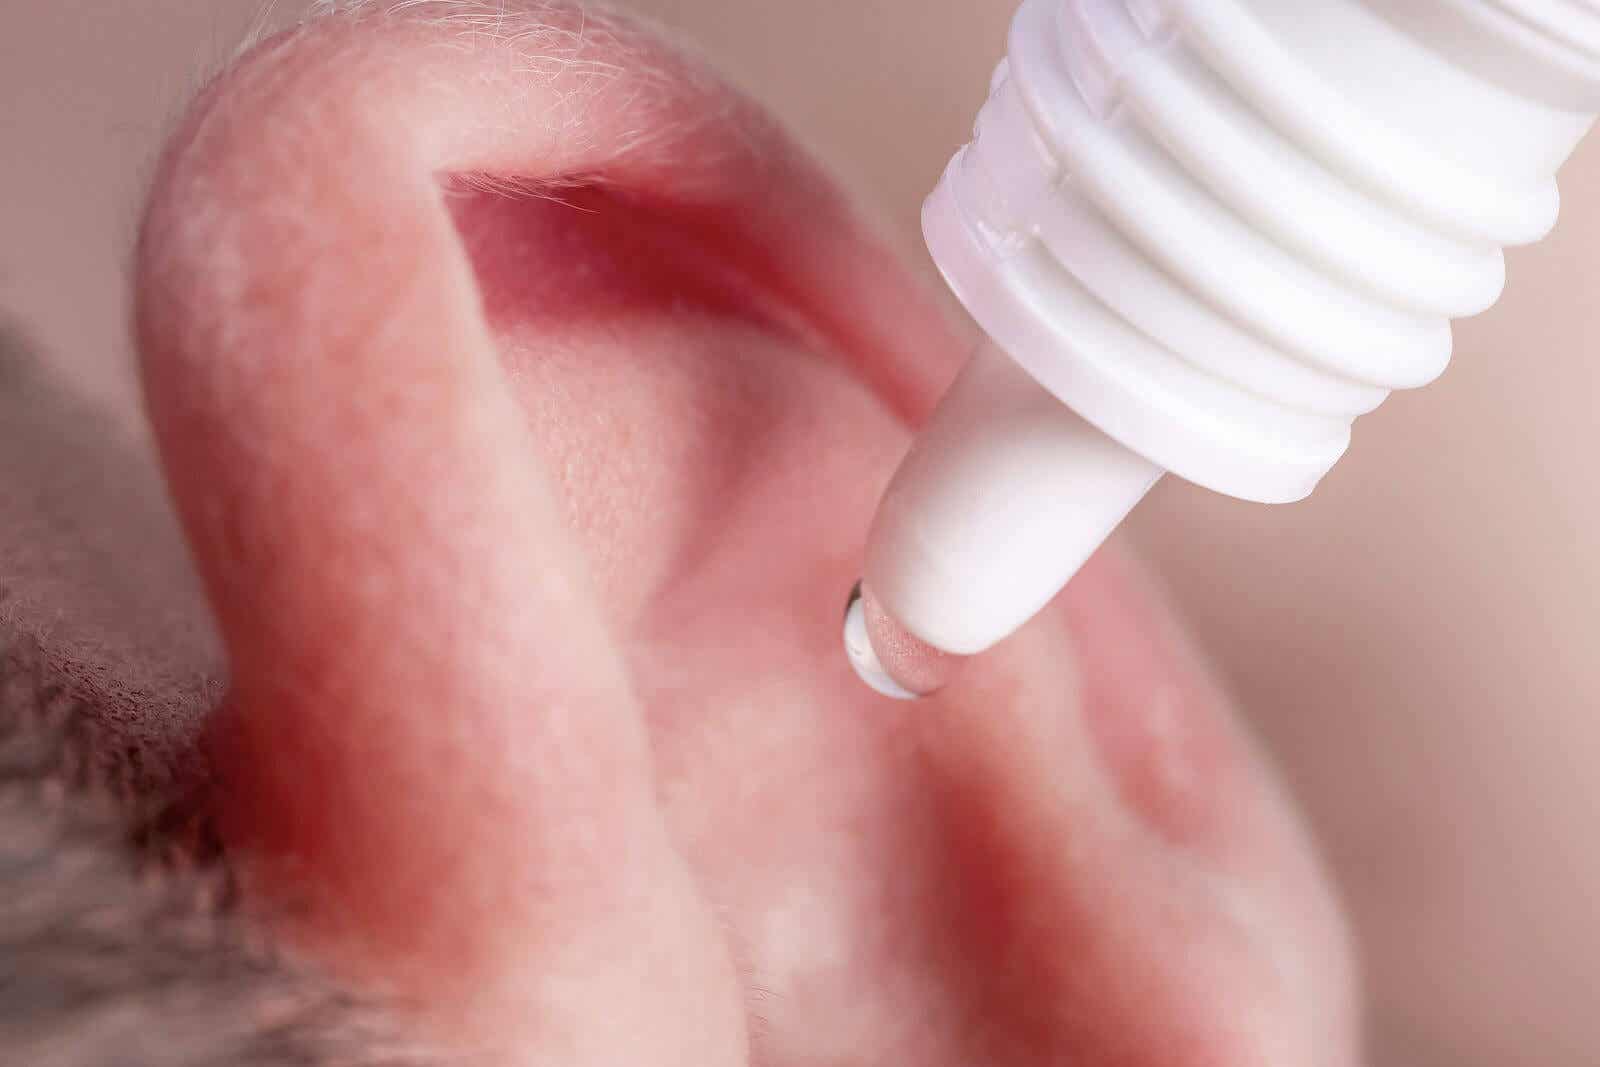 La infección de oído requiere tratamiento